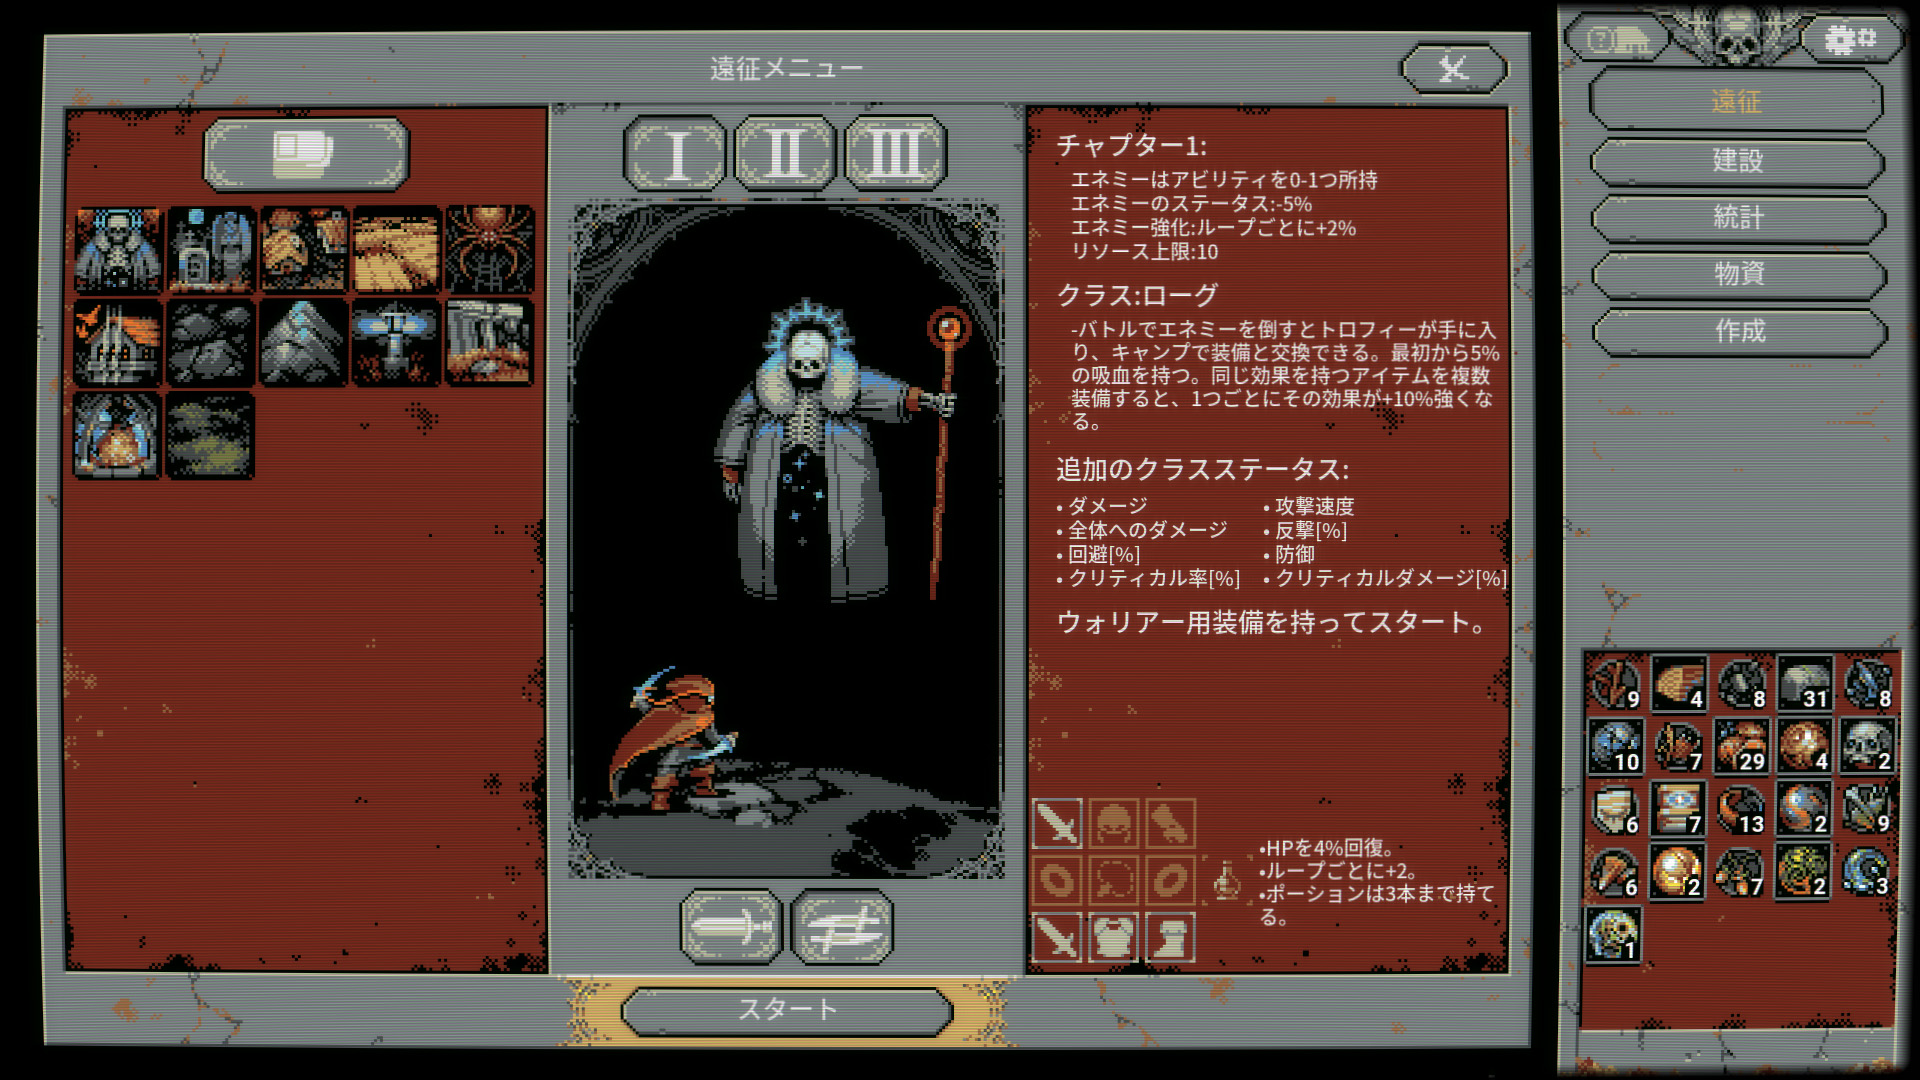 ループする世界を冒険する『Loop Hero』本日3月5日（金）より発売開始。2Dドットで表現されたダンジョン自動生成型RPG、日本語に対応しゲームの雰囲気に合わせた「日本語版ピクセルフォント」も実装予定_010